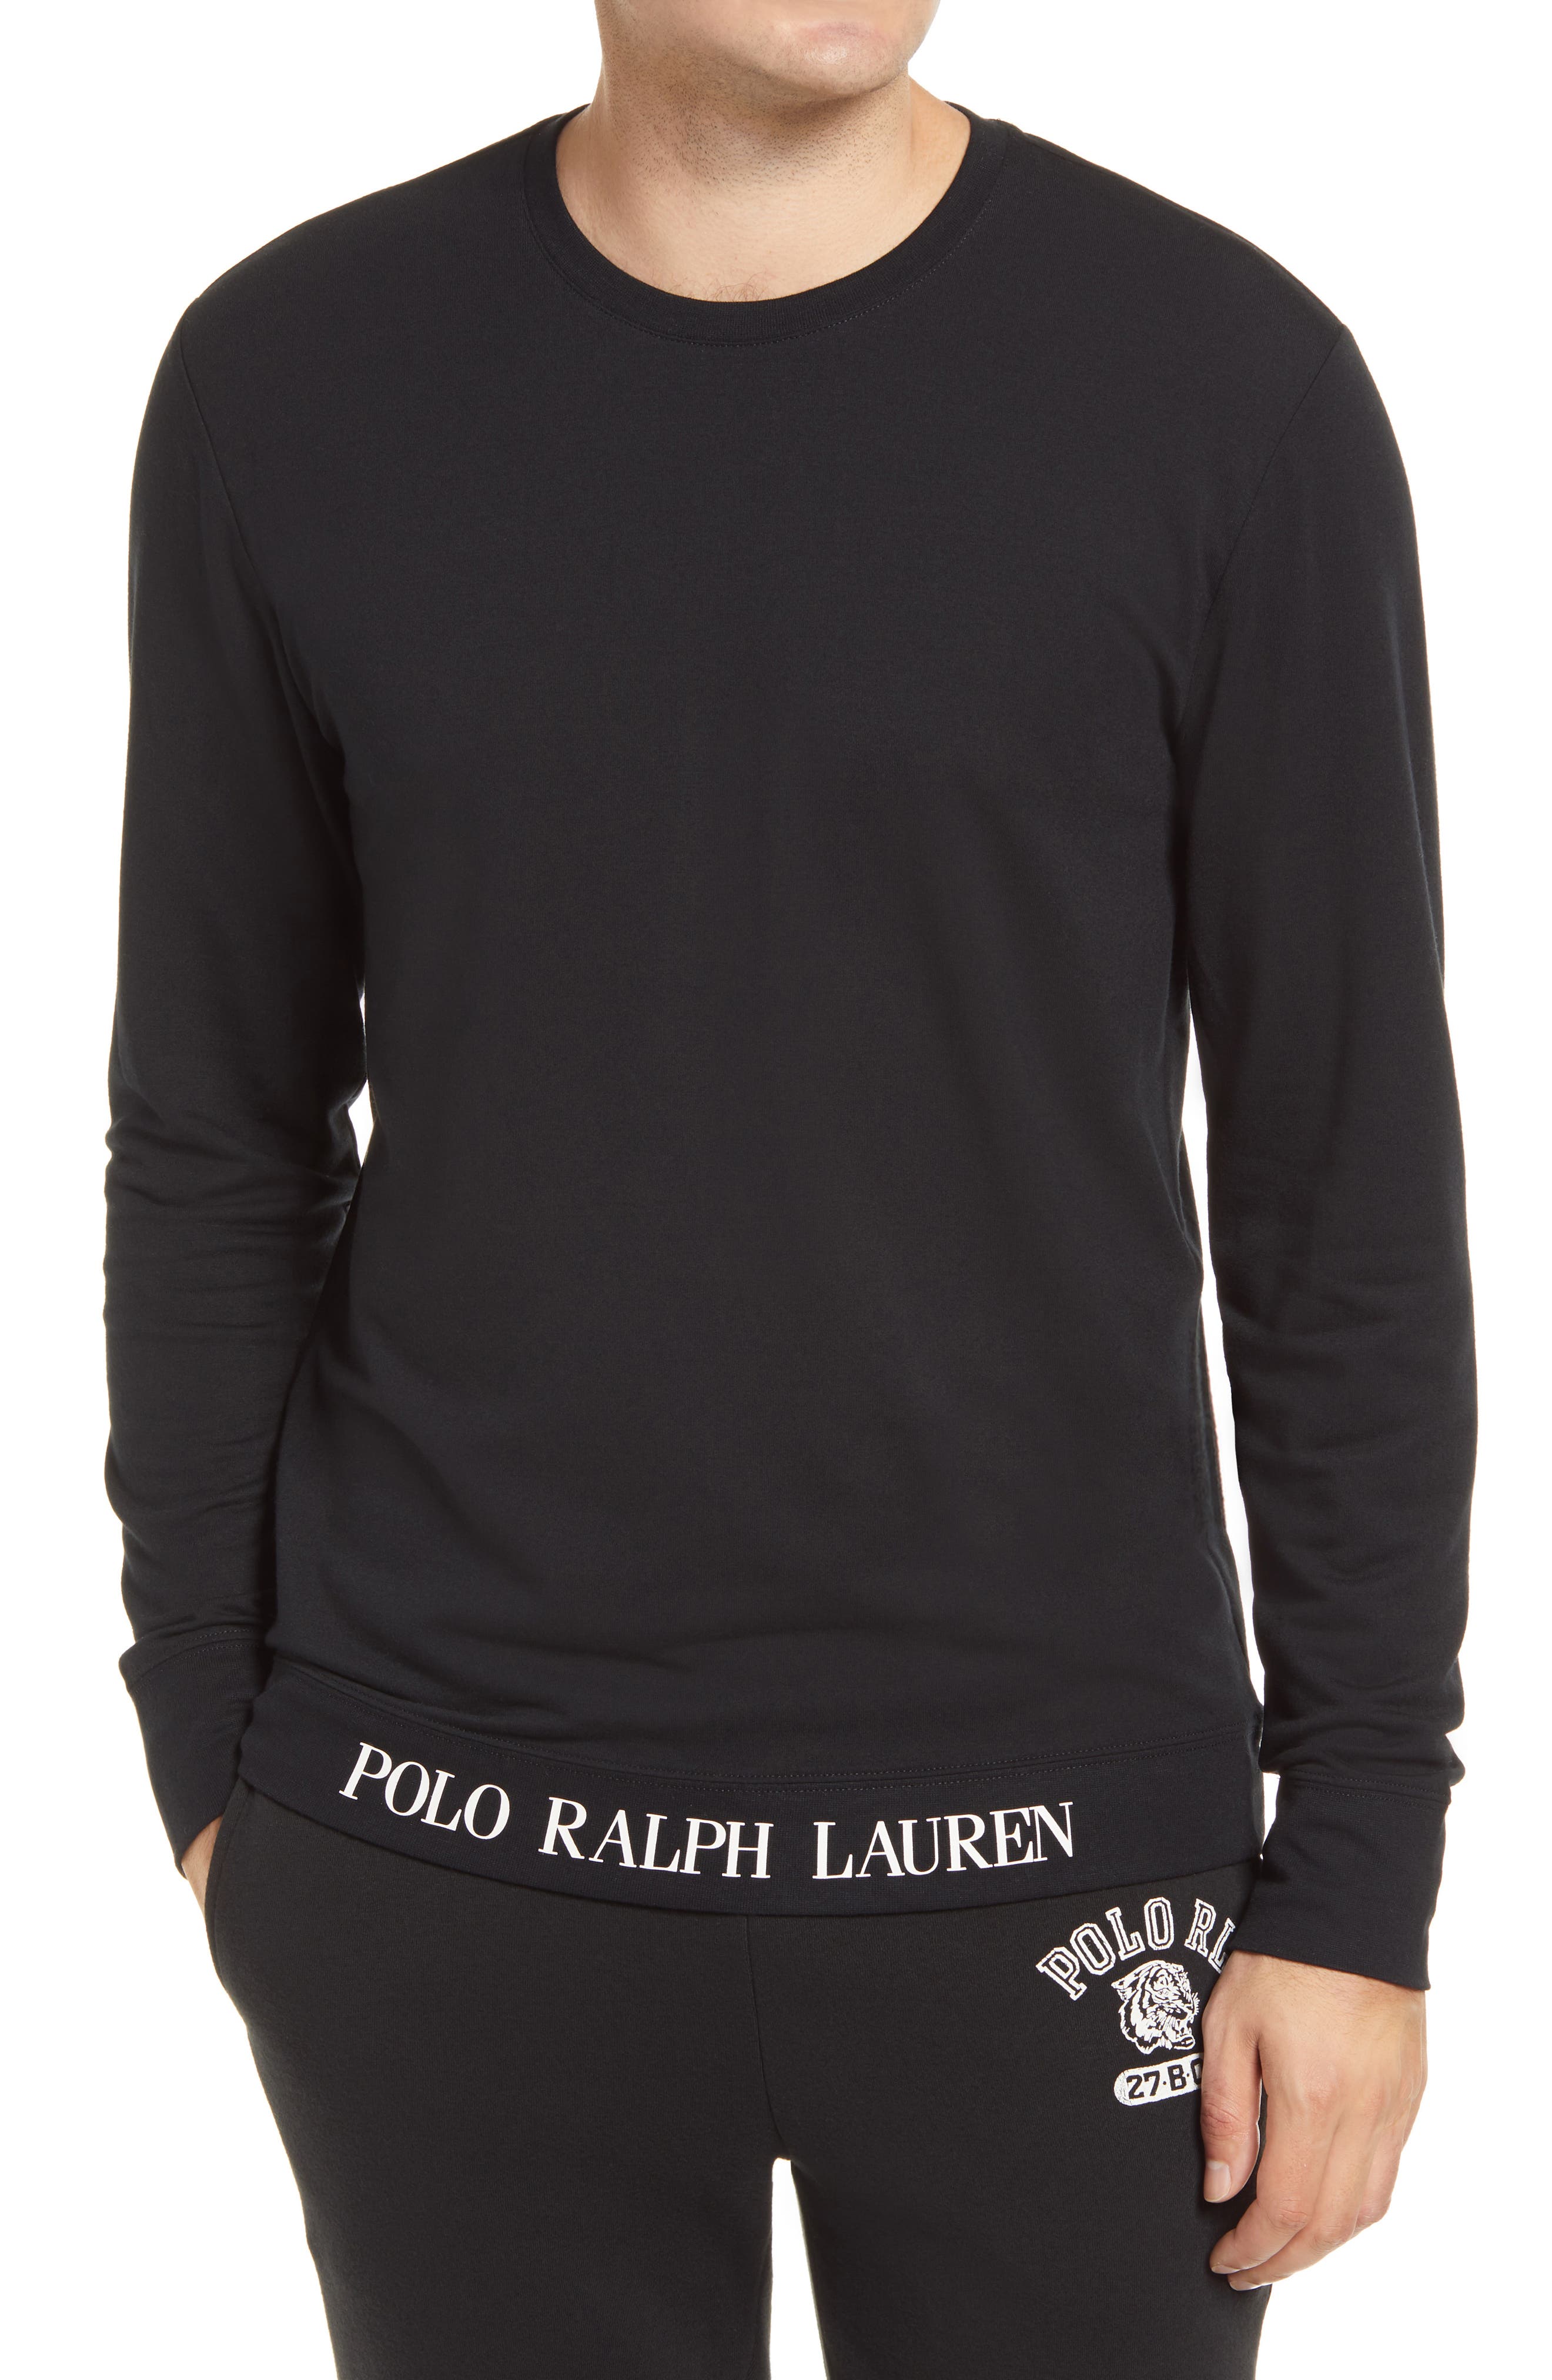 polo ralph lauren sleep shirt